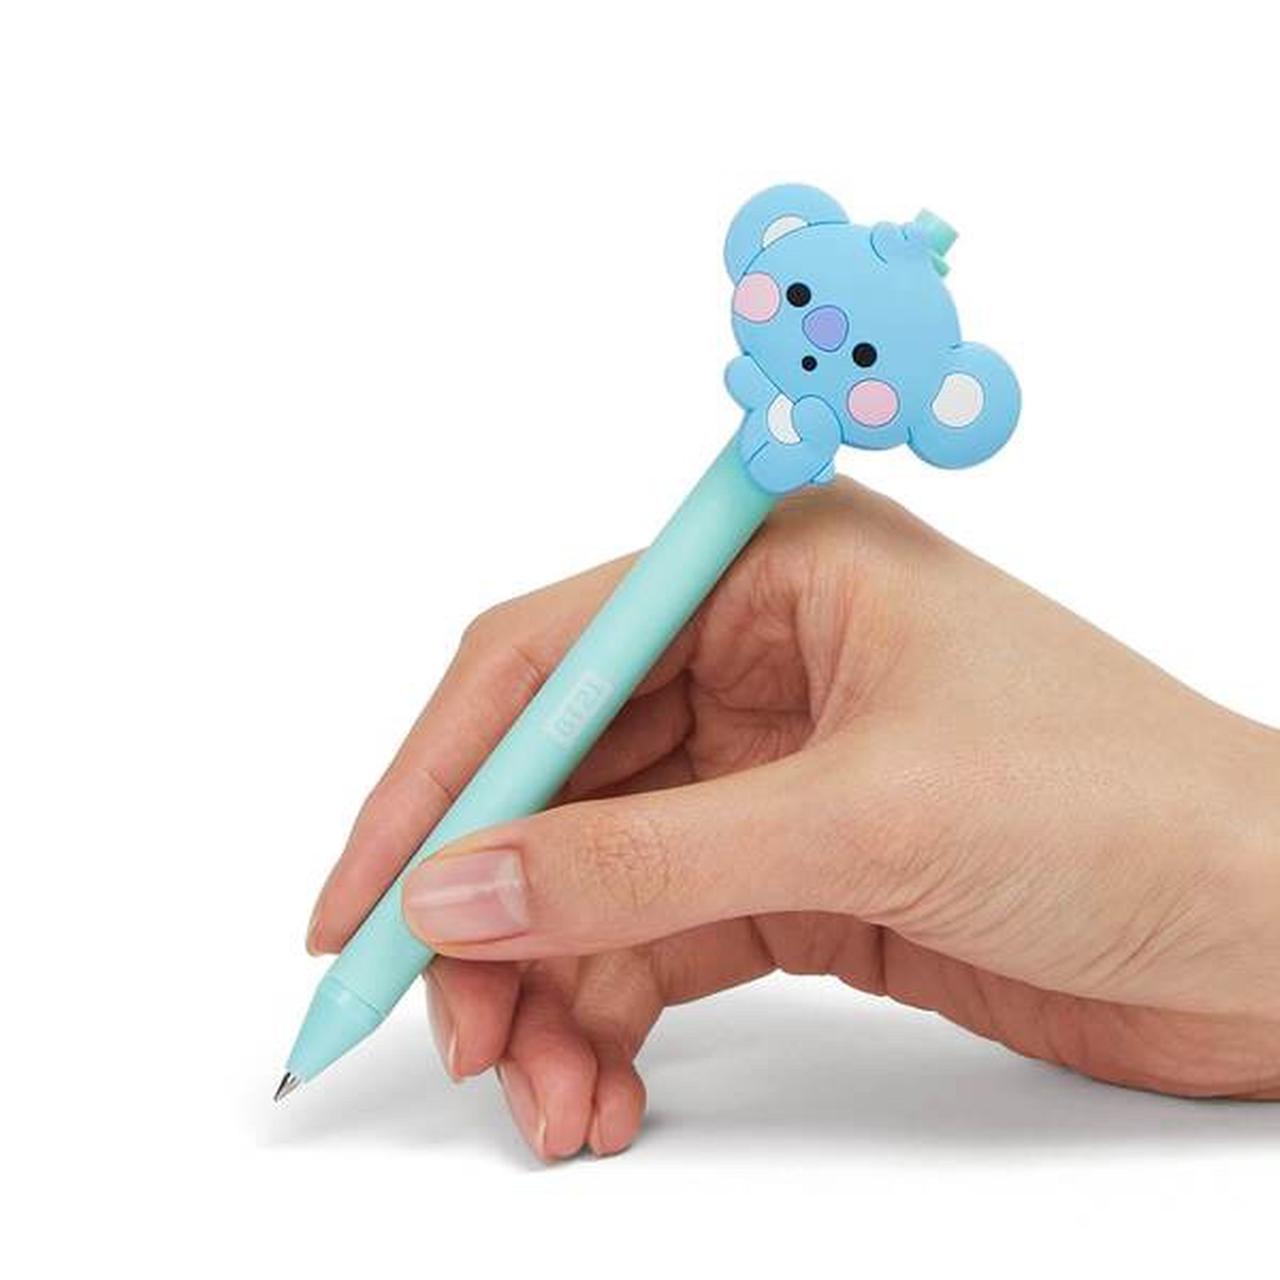 Authentic BT21 baby koya gel pen. Brand new with - Depop